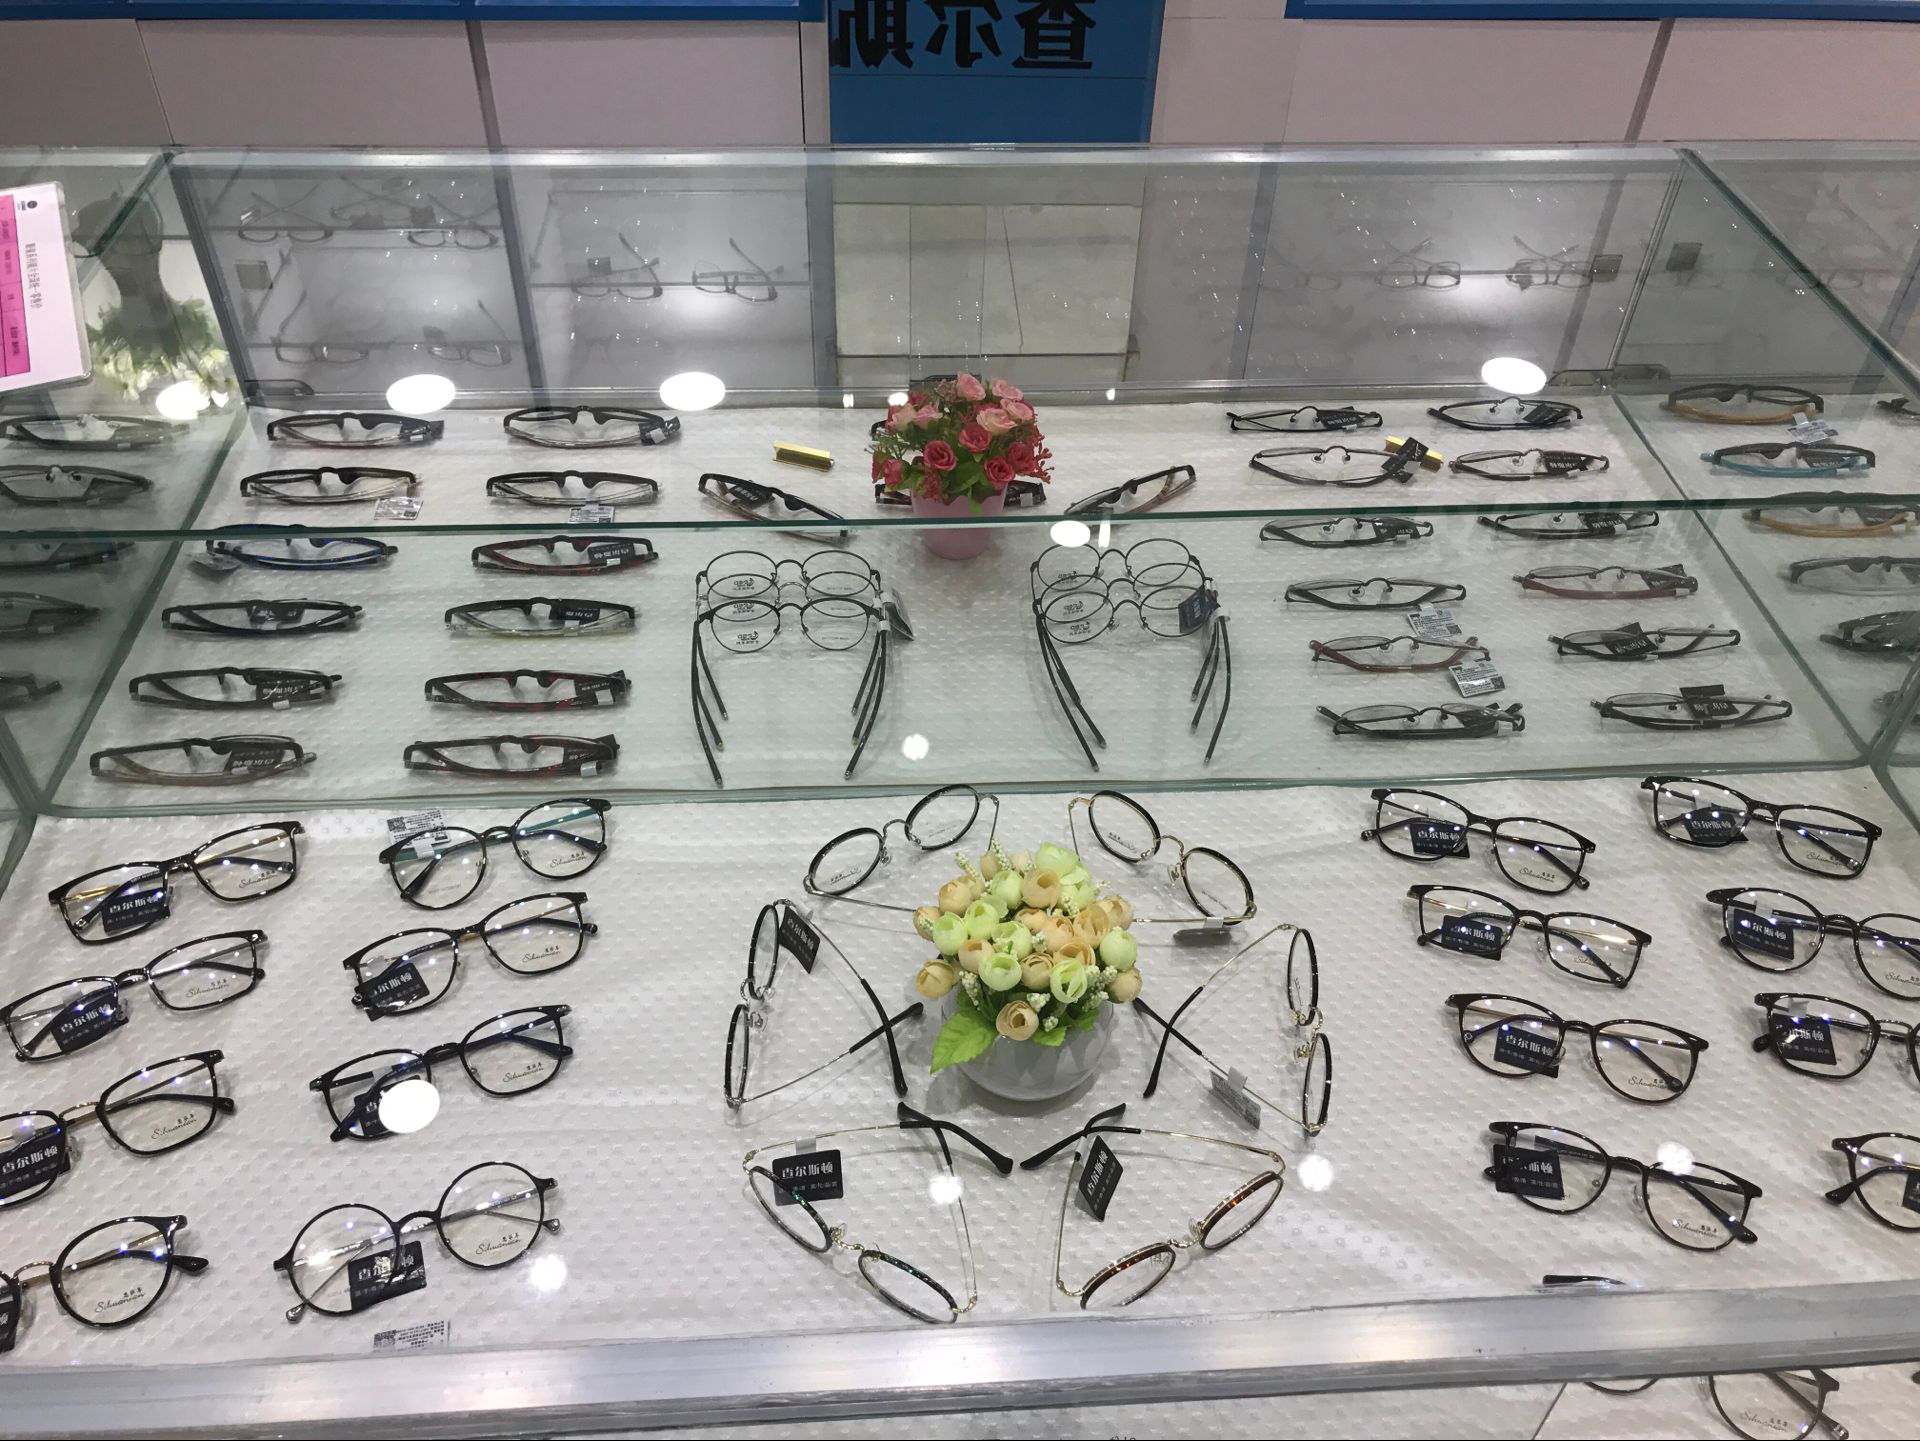 查尔斯顿眼镜专卖店:投资小、利润高